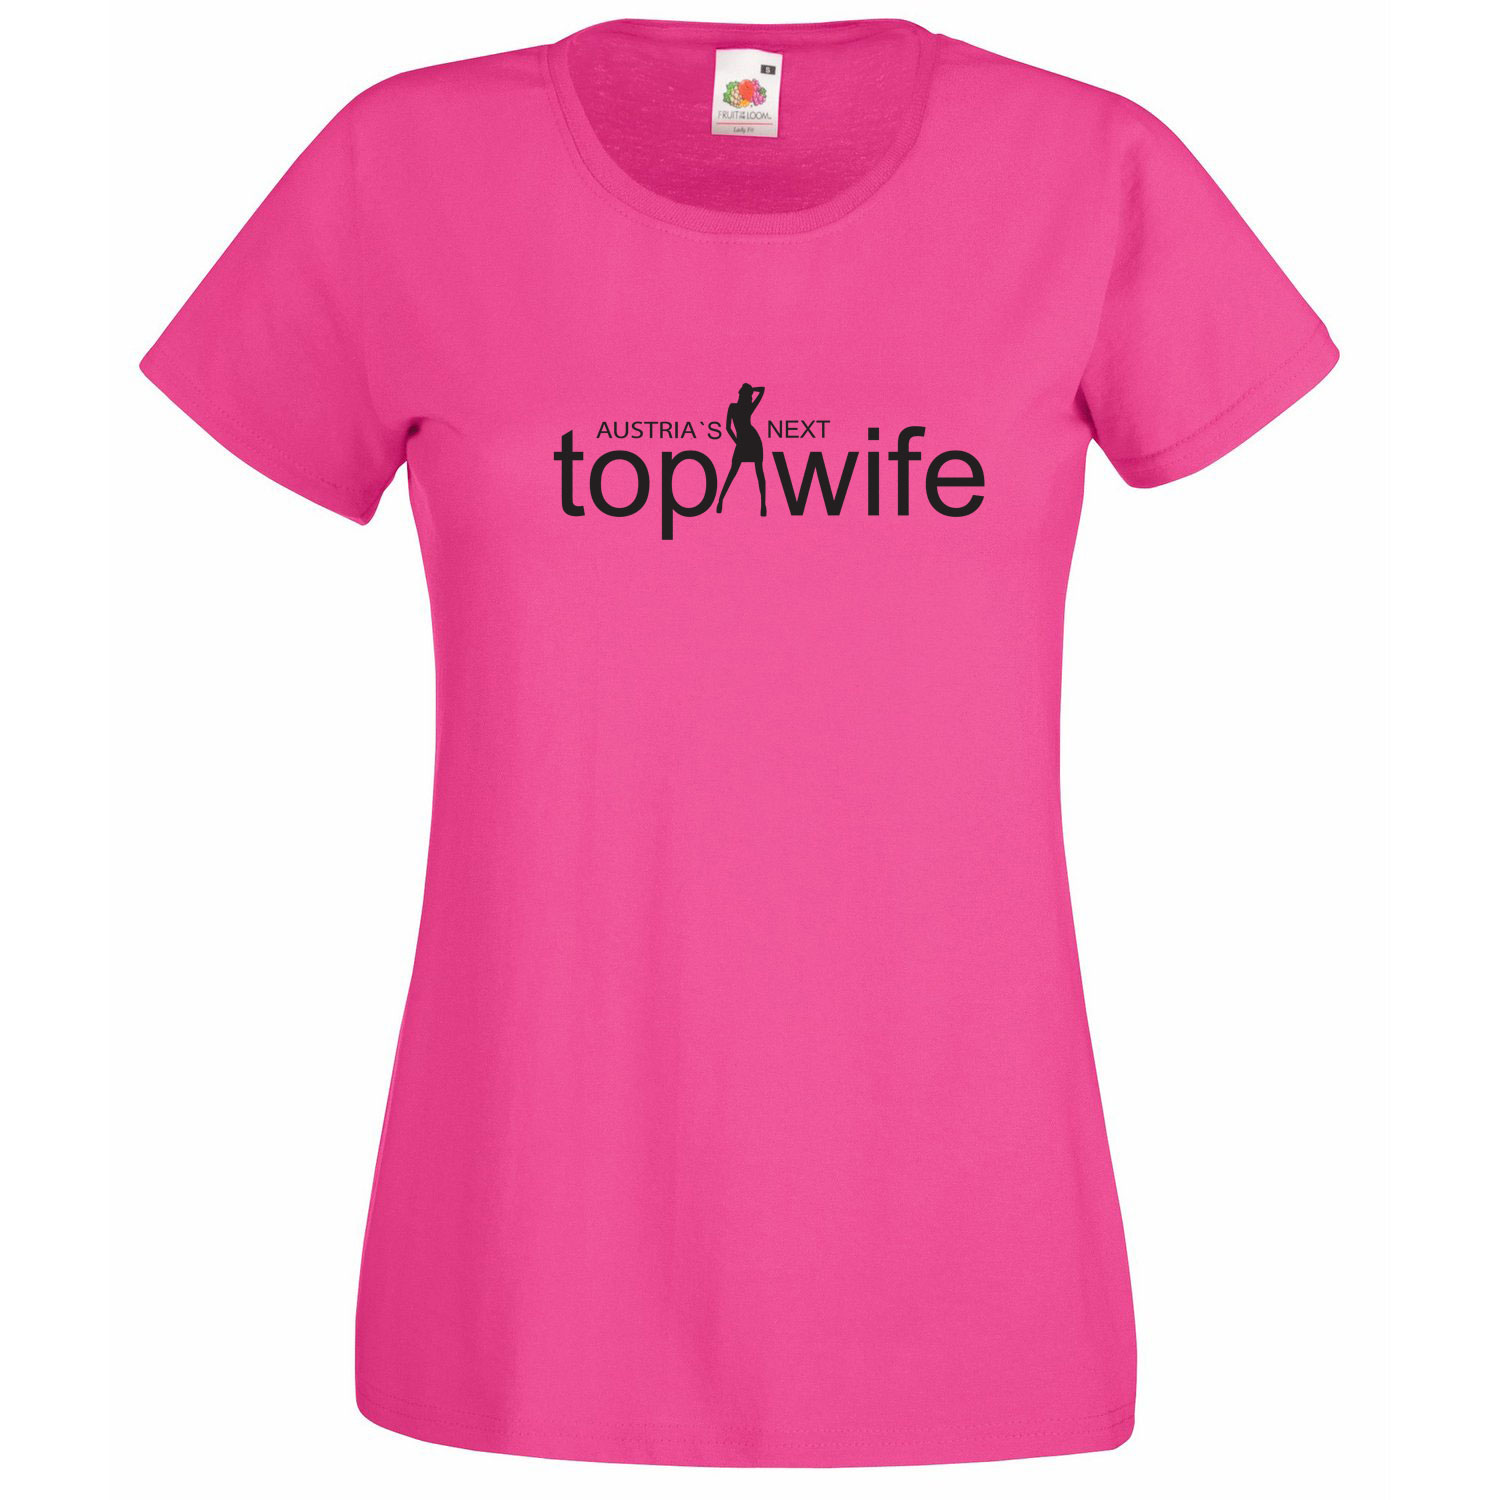 Polterabend T-Shirt mit Aufdruck Austria`s Next Top Wife